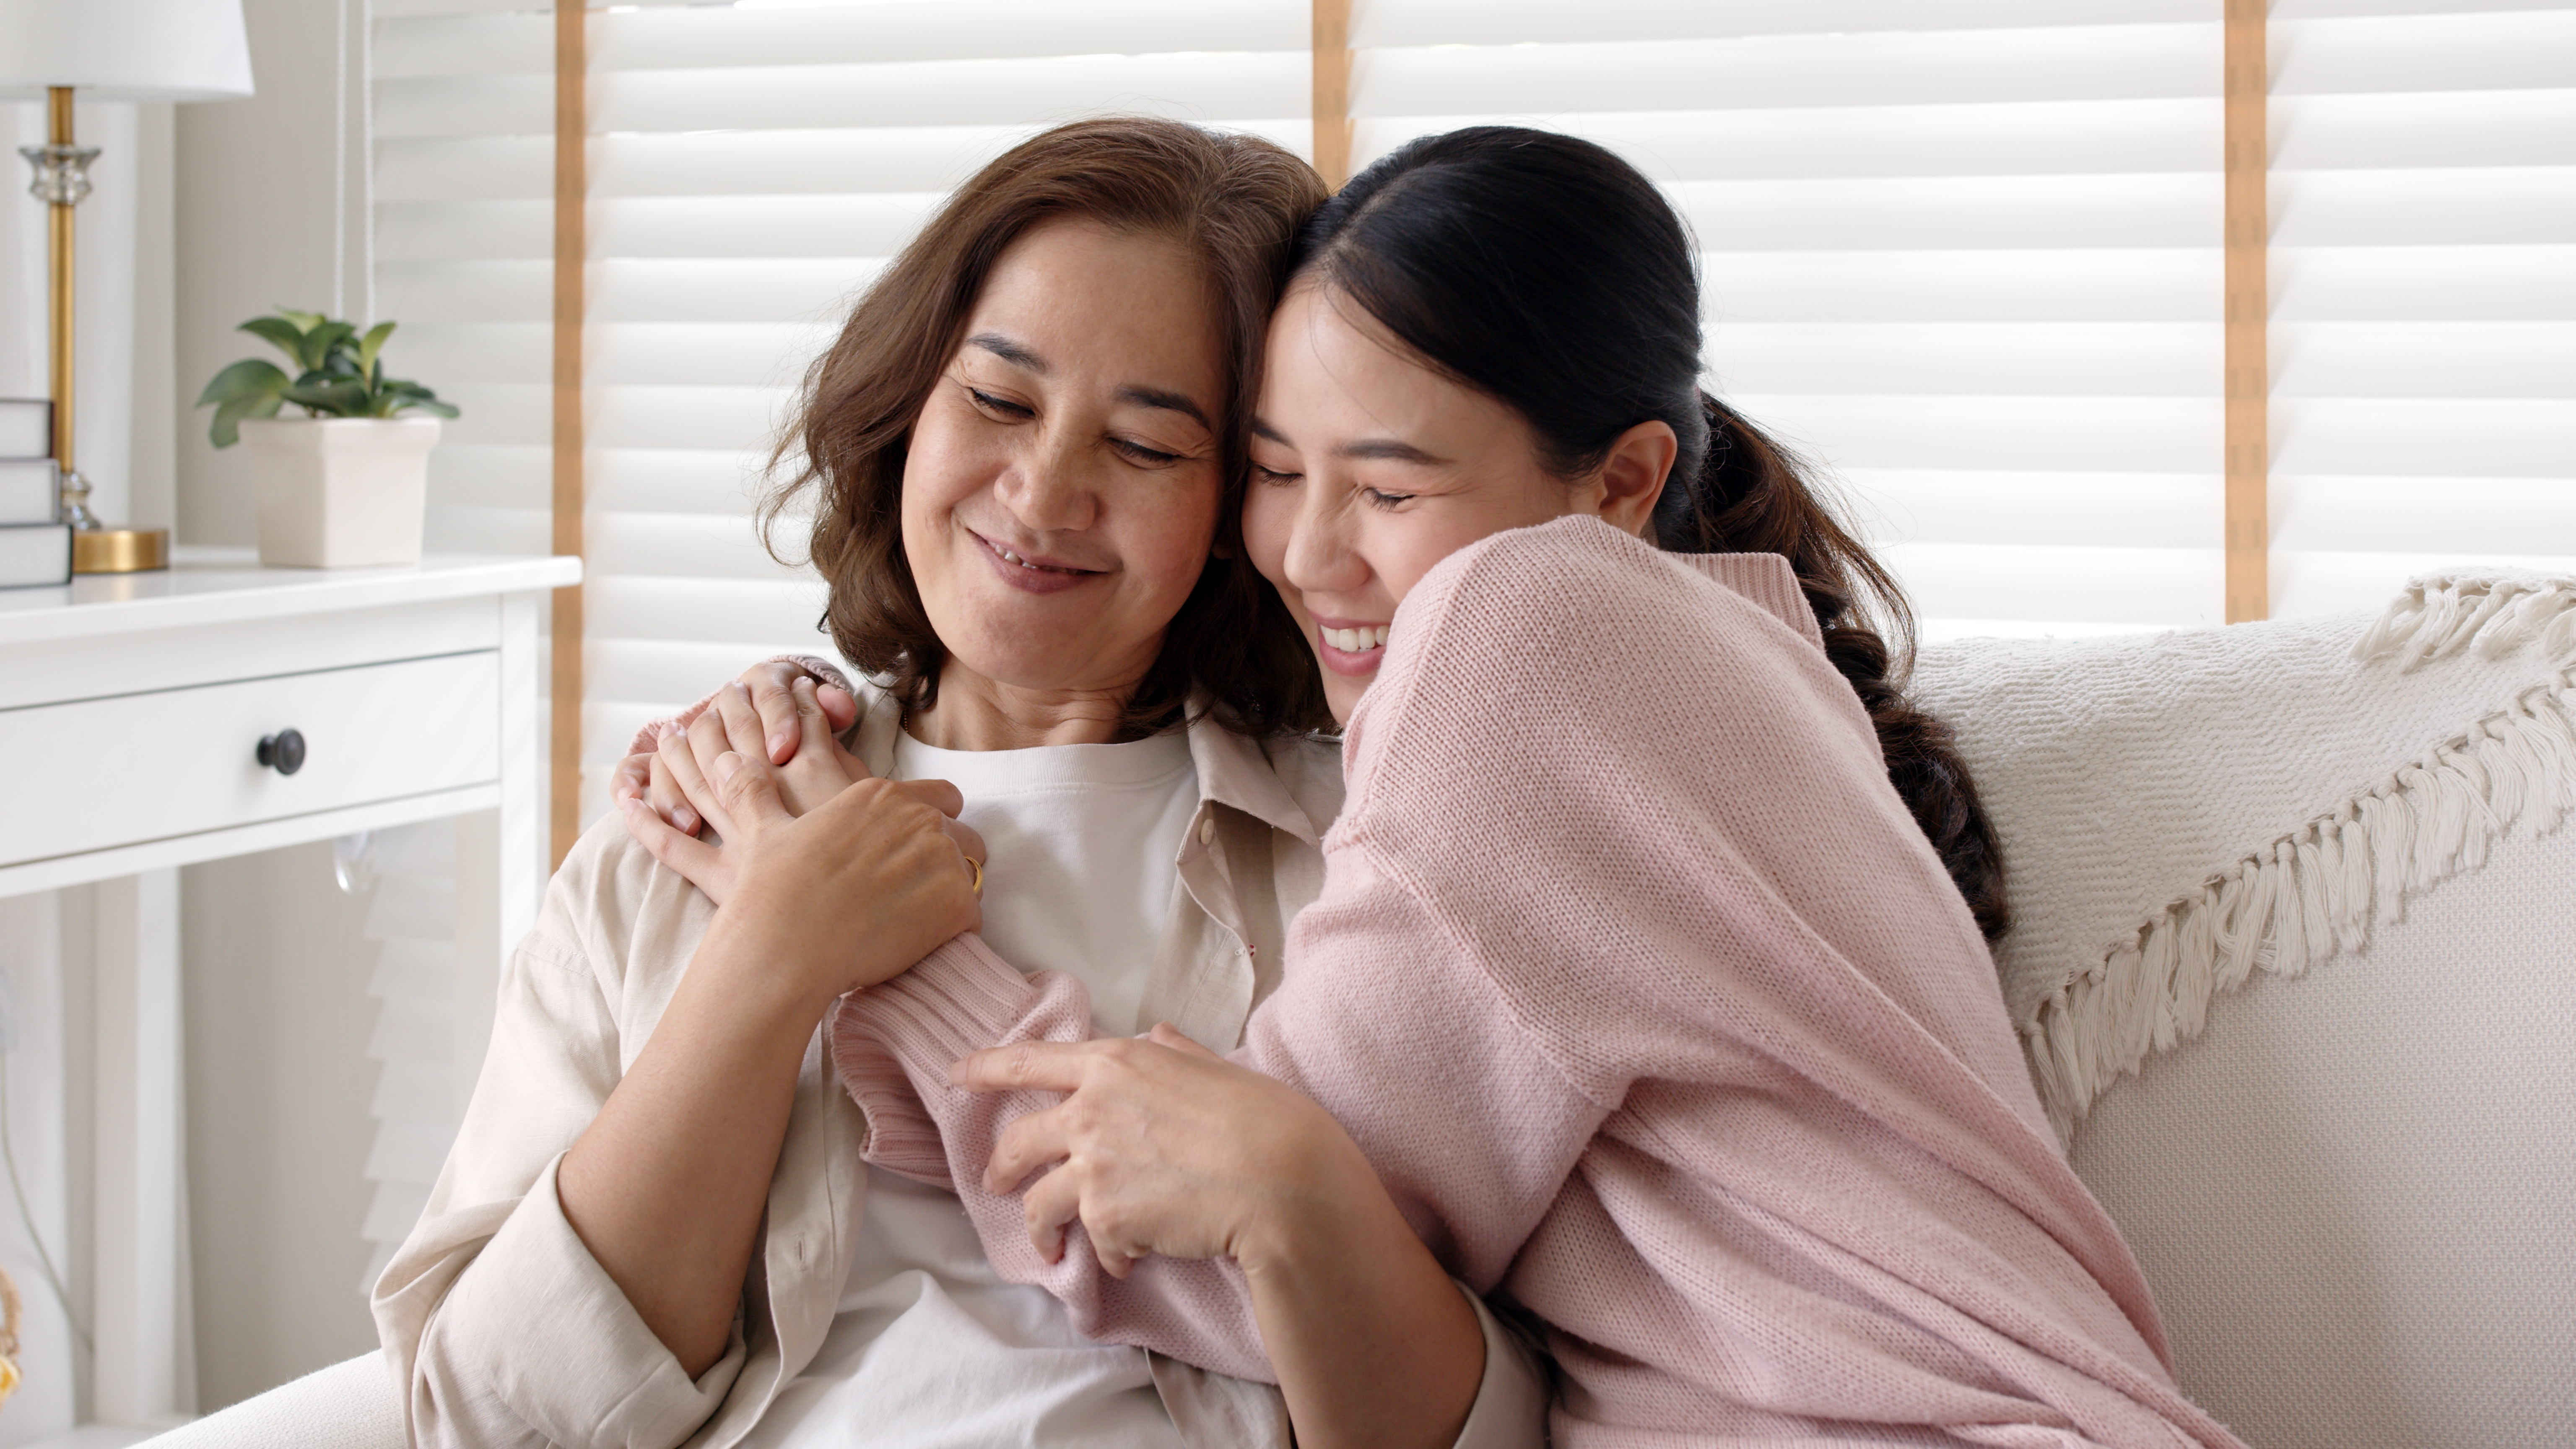 Daughter hugs mom | Shutterstock